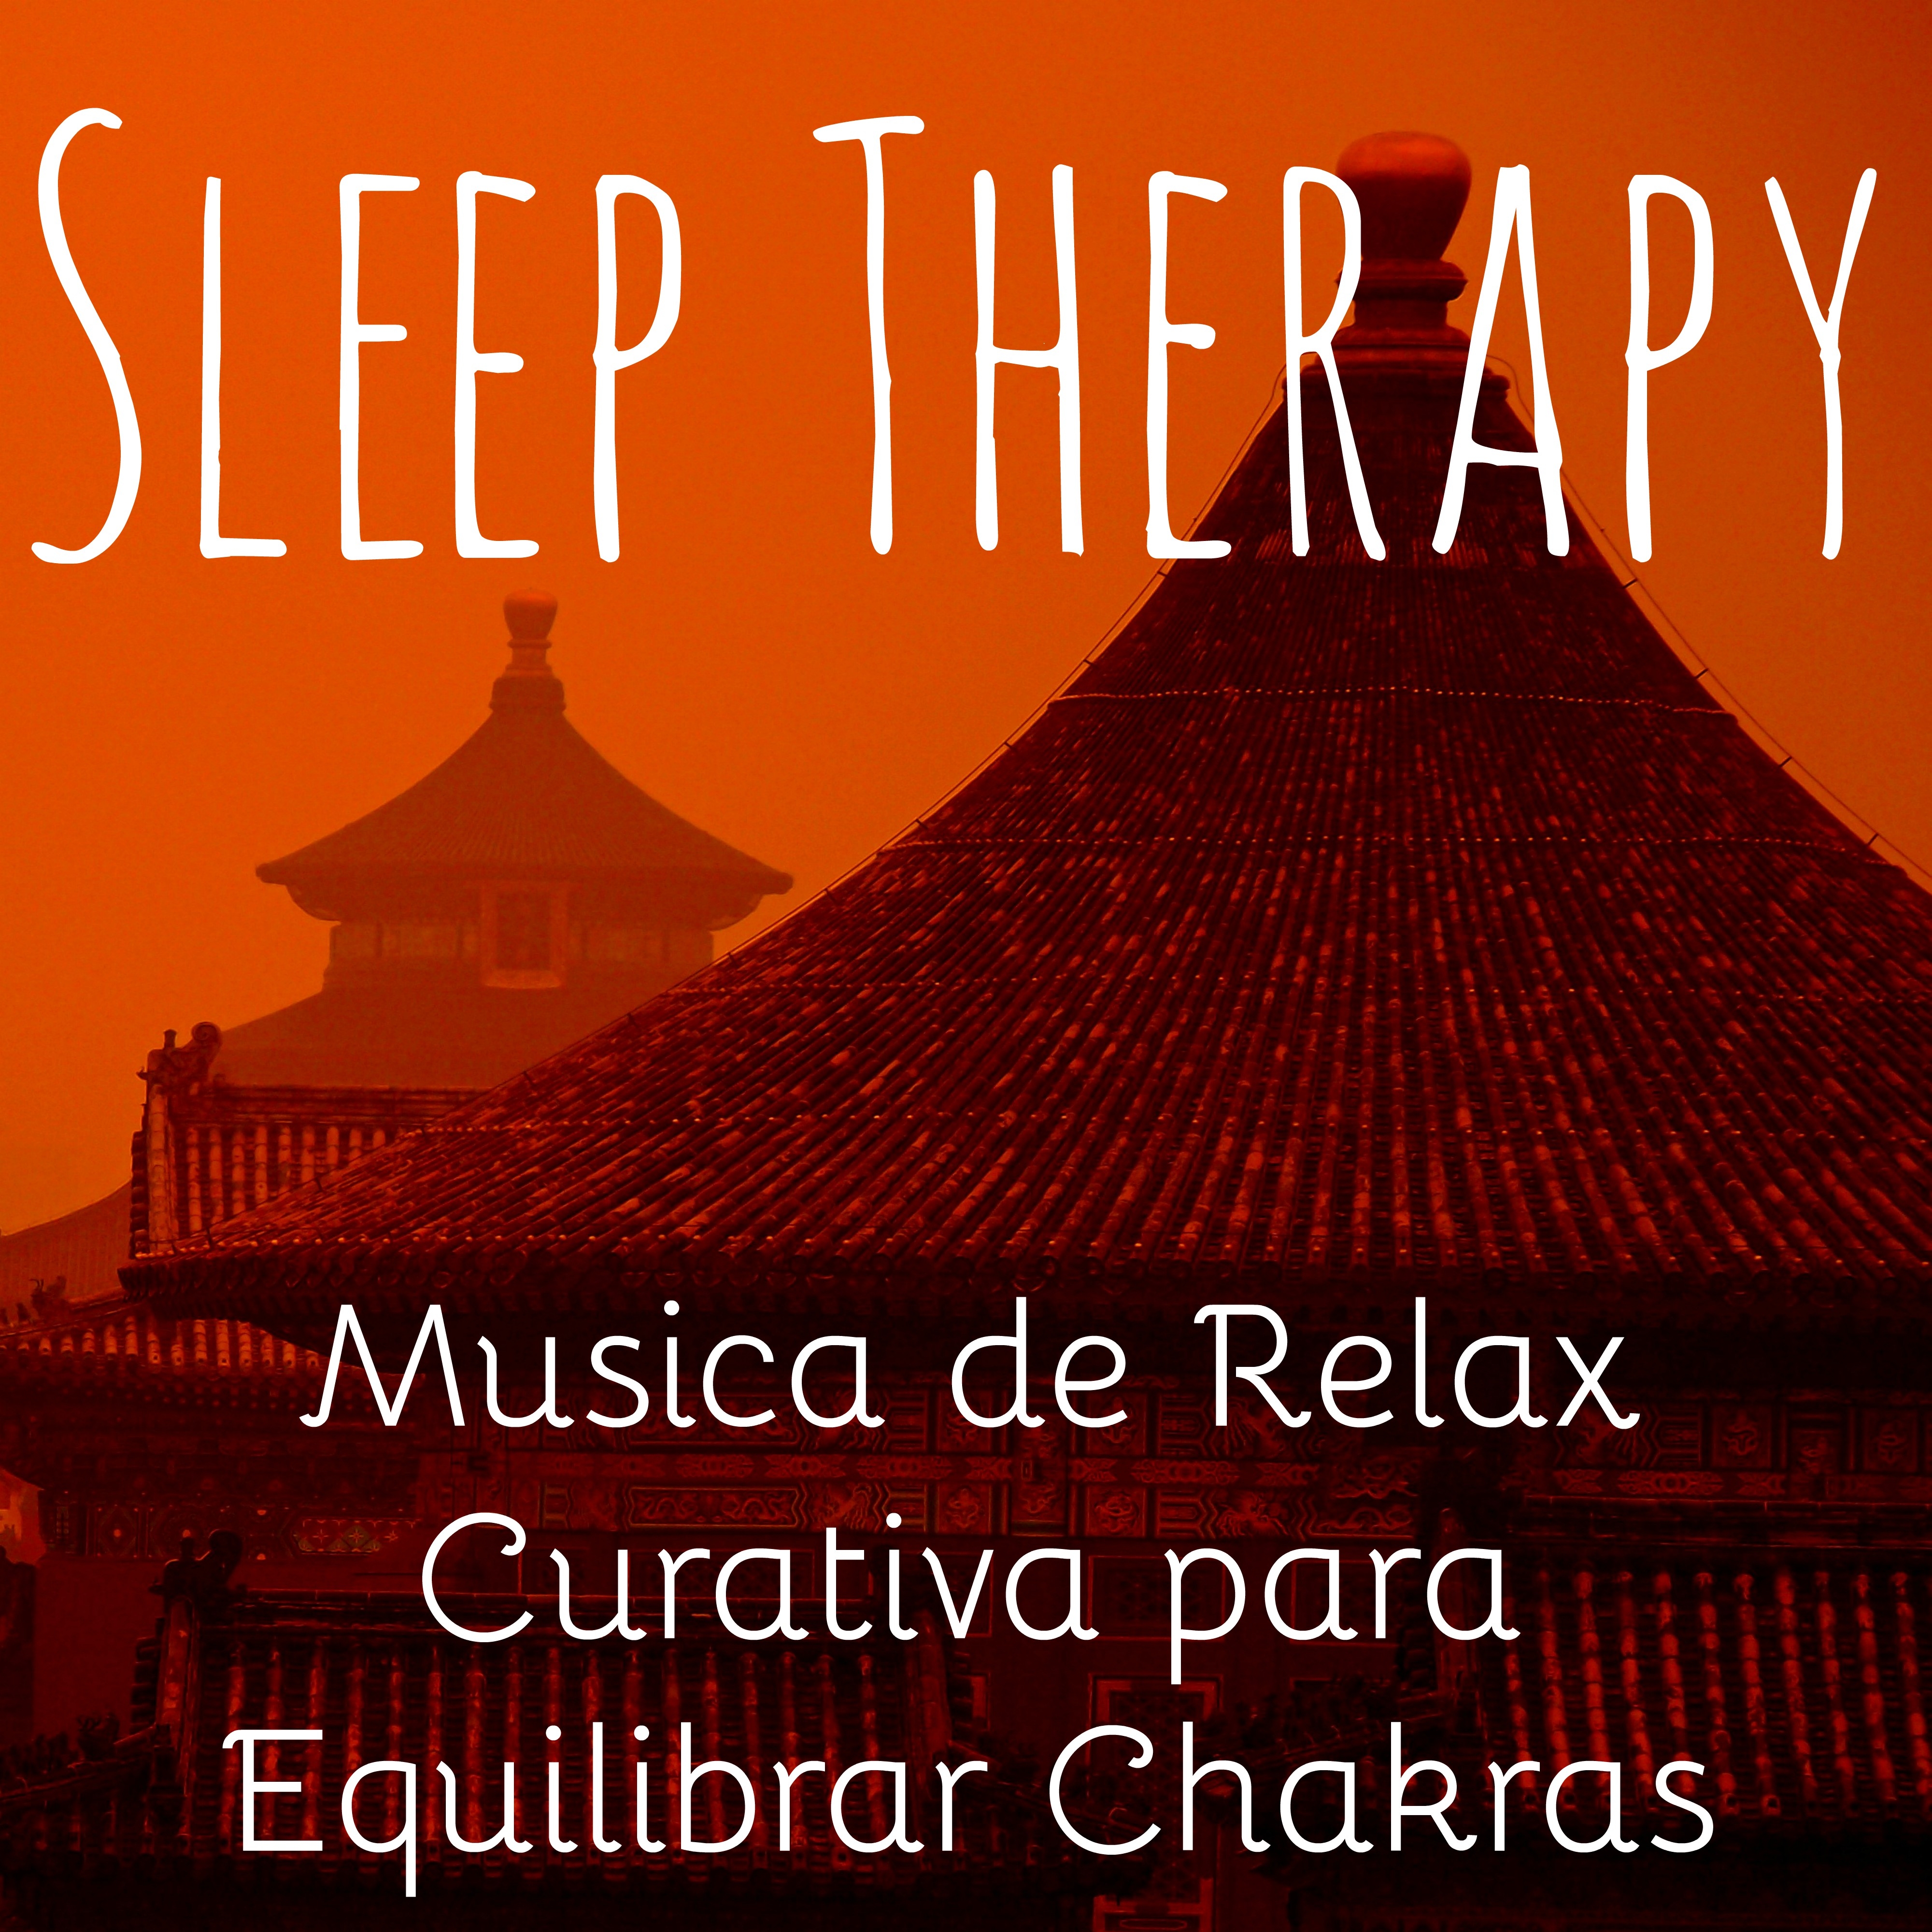 Sleep Therapy - Musica de Relax Curativa Meditación de Atención Plena para Equilibrar Chakras con Sonidos Naturale Instrumentales